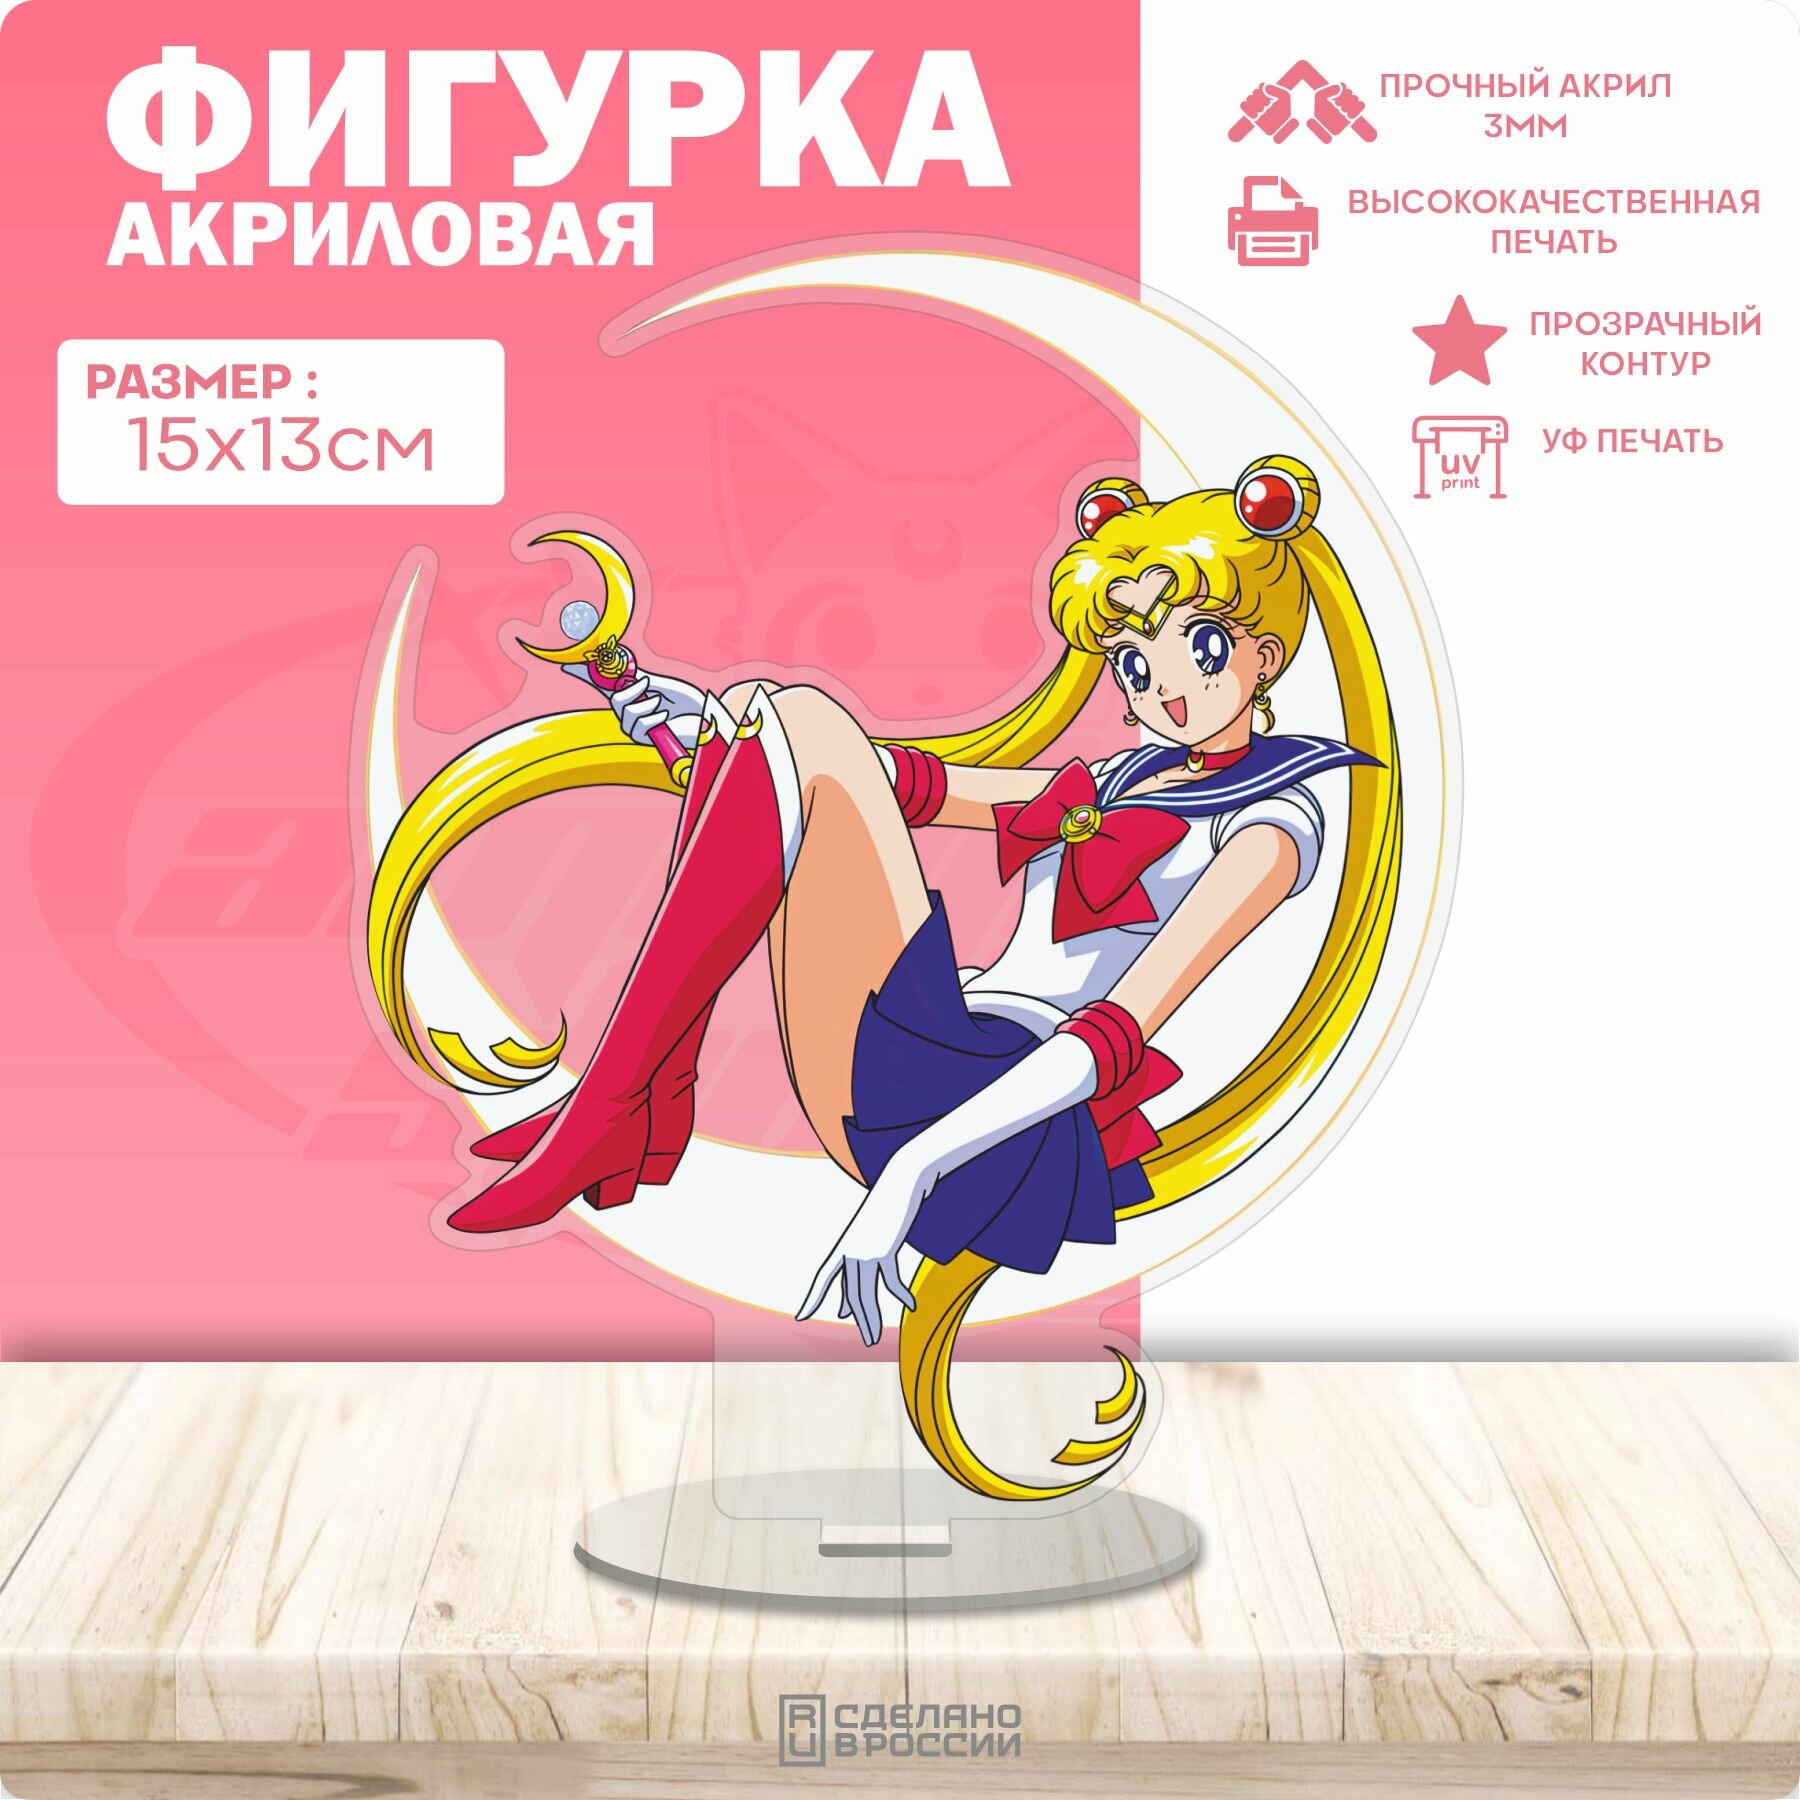 Акриловая фигурка Сейлор Мун Sailor Moon